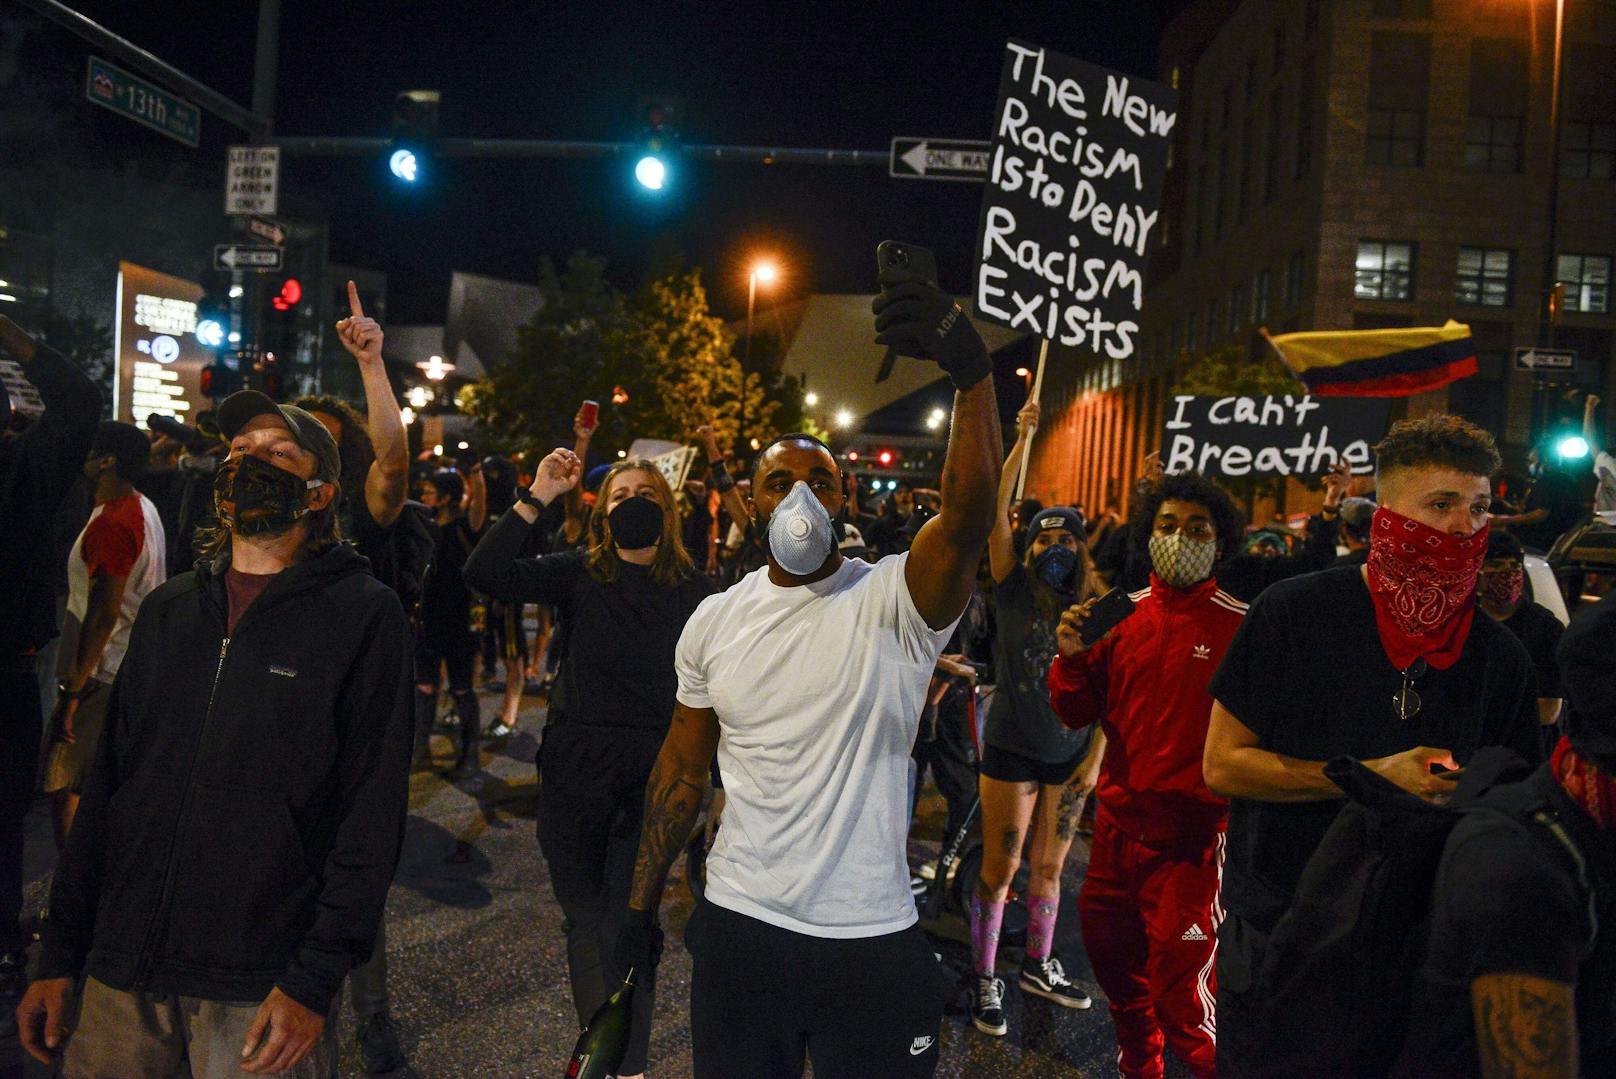 Nach dem Tod eines Afroamerikaners in Polizeigewahrsam kommt es in zahlreichen Städten in den USA zu Protesten und Ausschreitungen